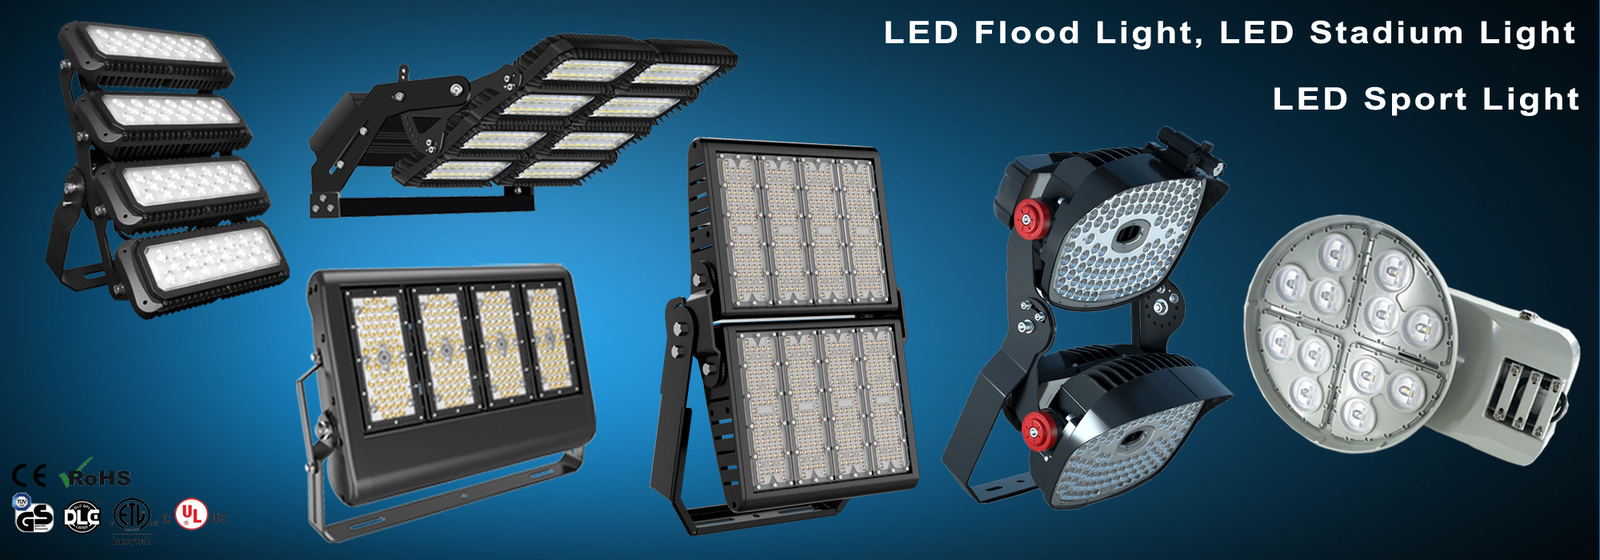 Waterproof LED Flood Light